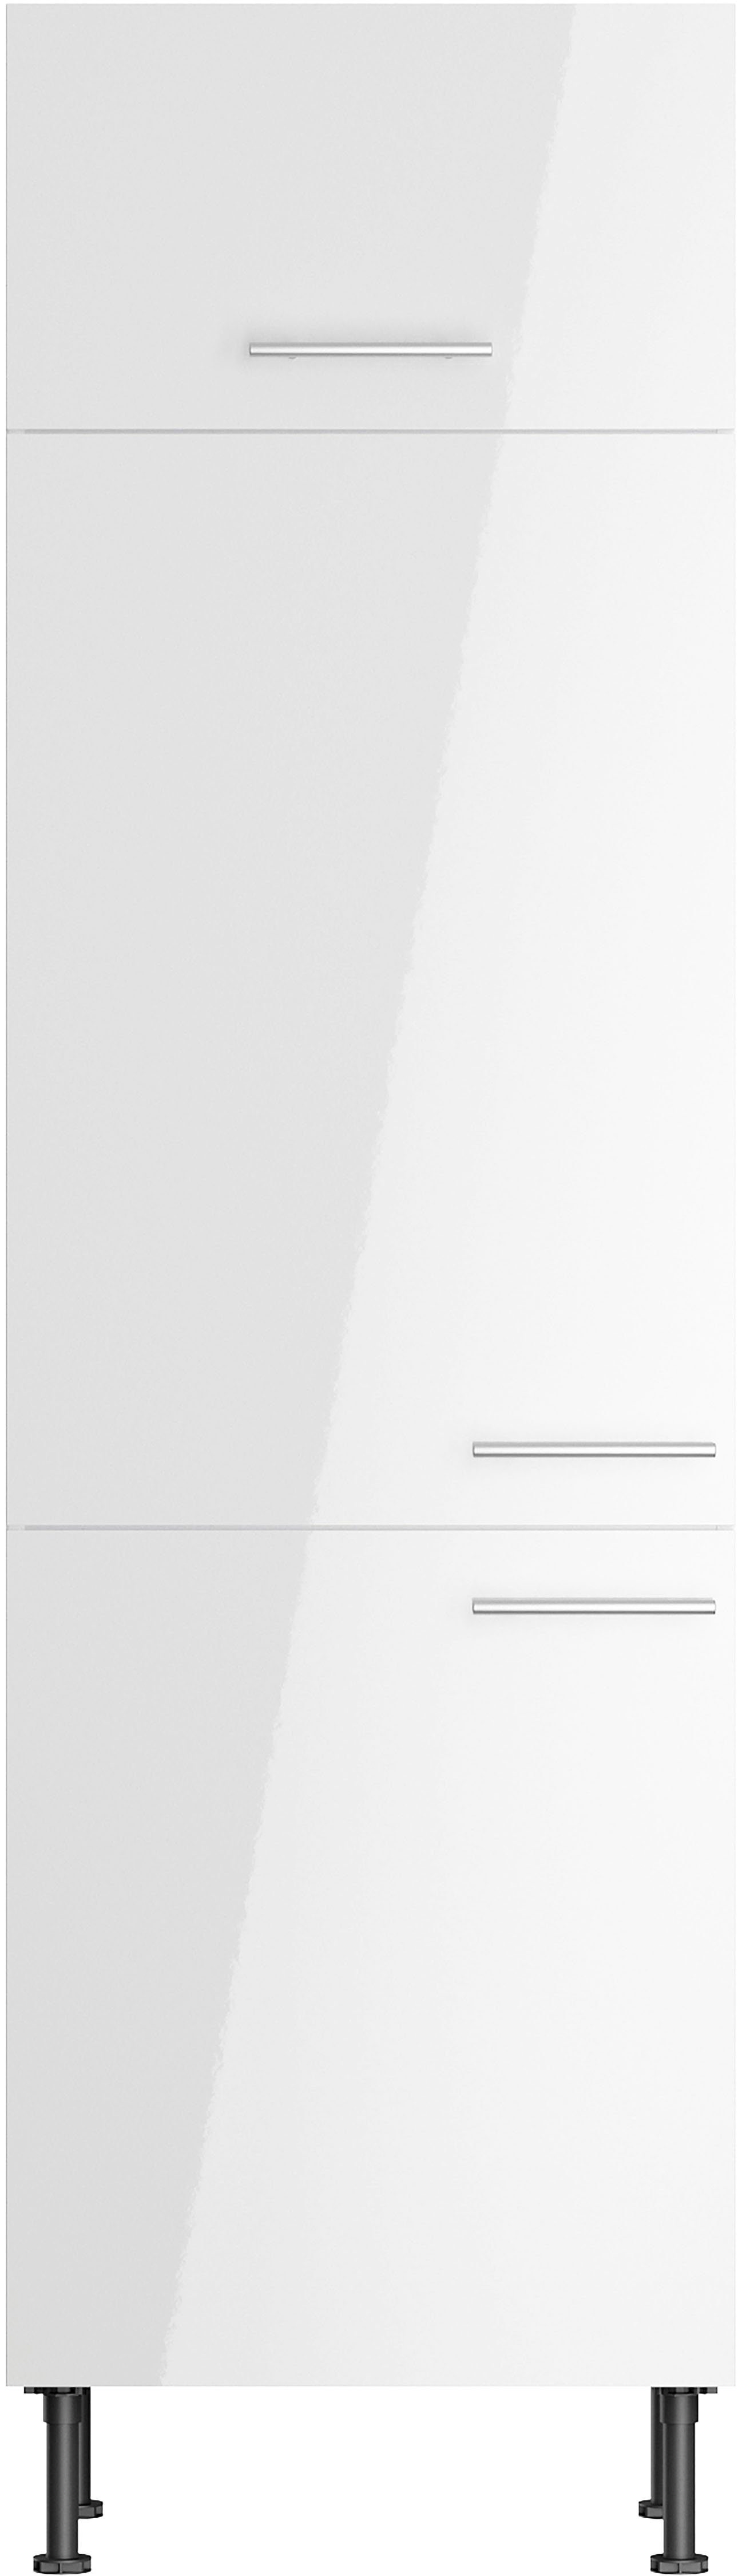 Kühlumbauschrank weiß cm OPTIFIT Breite Klara lackiert/weiß 60